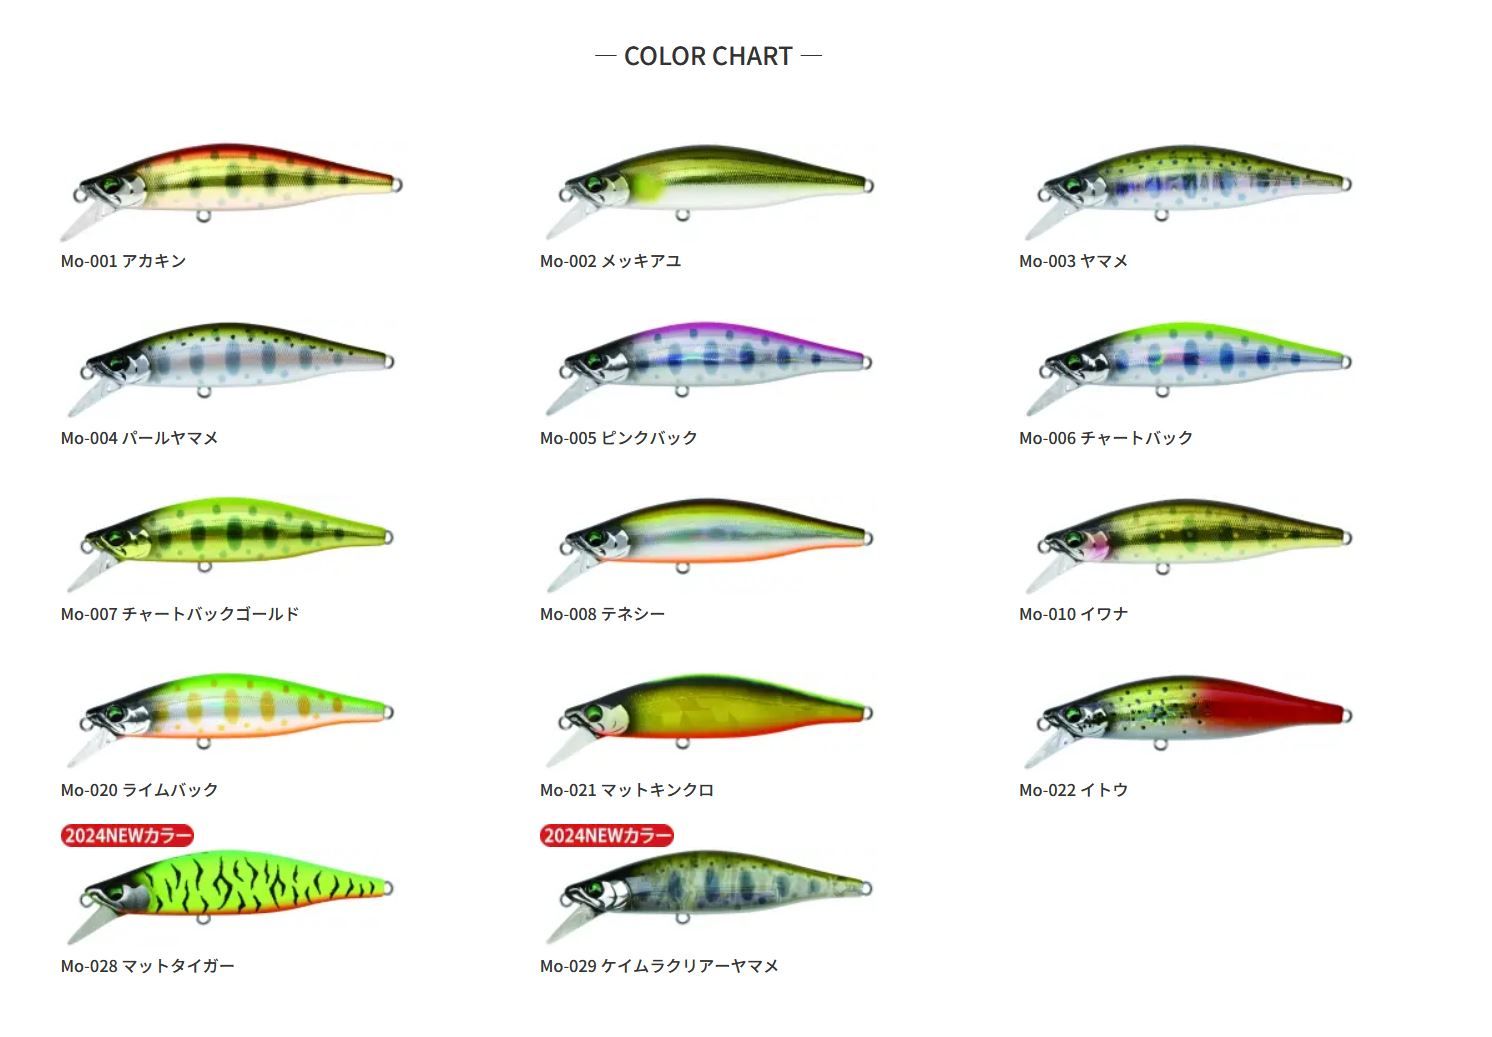 バスデイ もののふ64S カラーチャート2 渓流ミノー BassDay mononofu 釣り釣具 釣り具 フィッシング ハードルアー シンキングミノー ネイティブトラウト もののふ64S